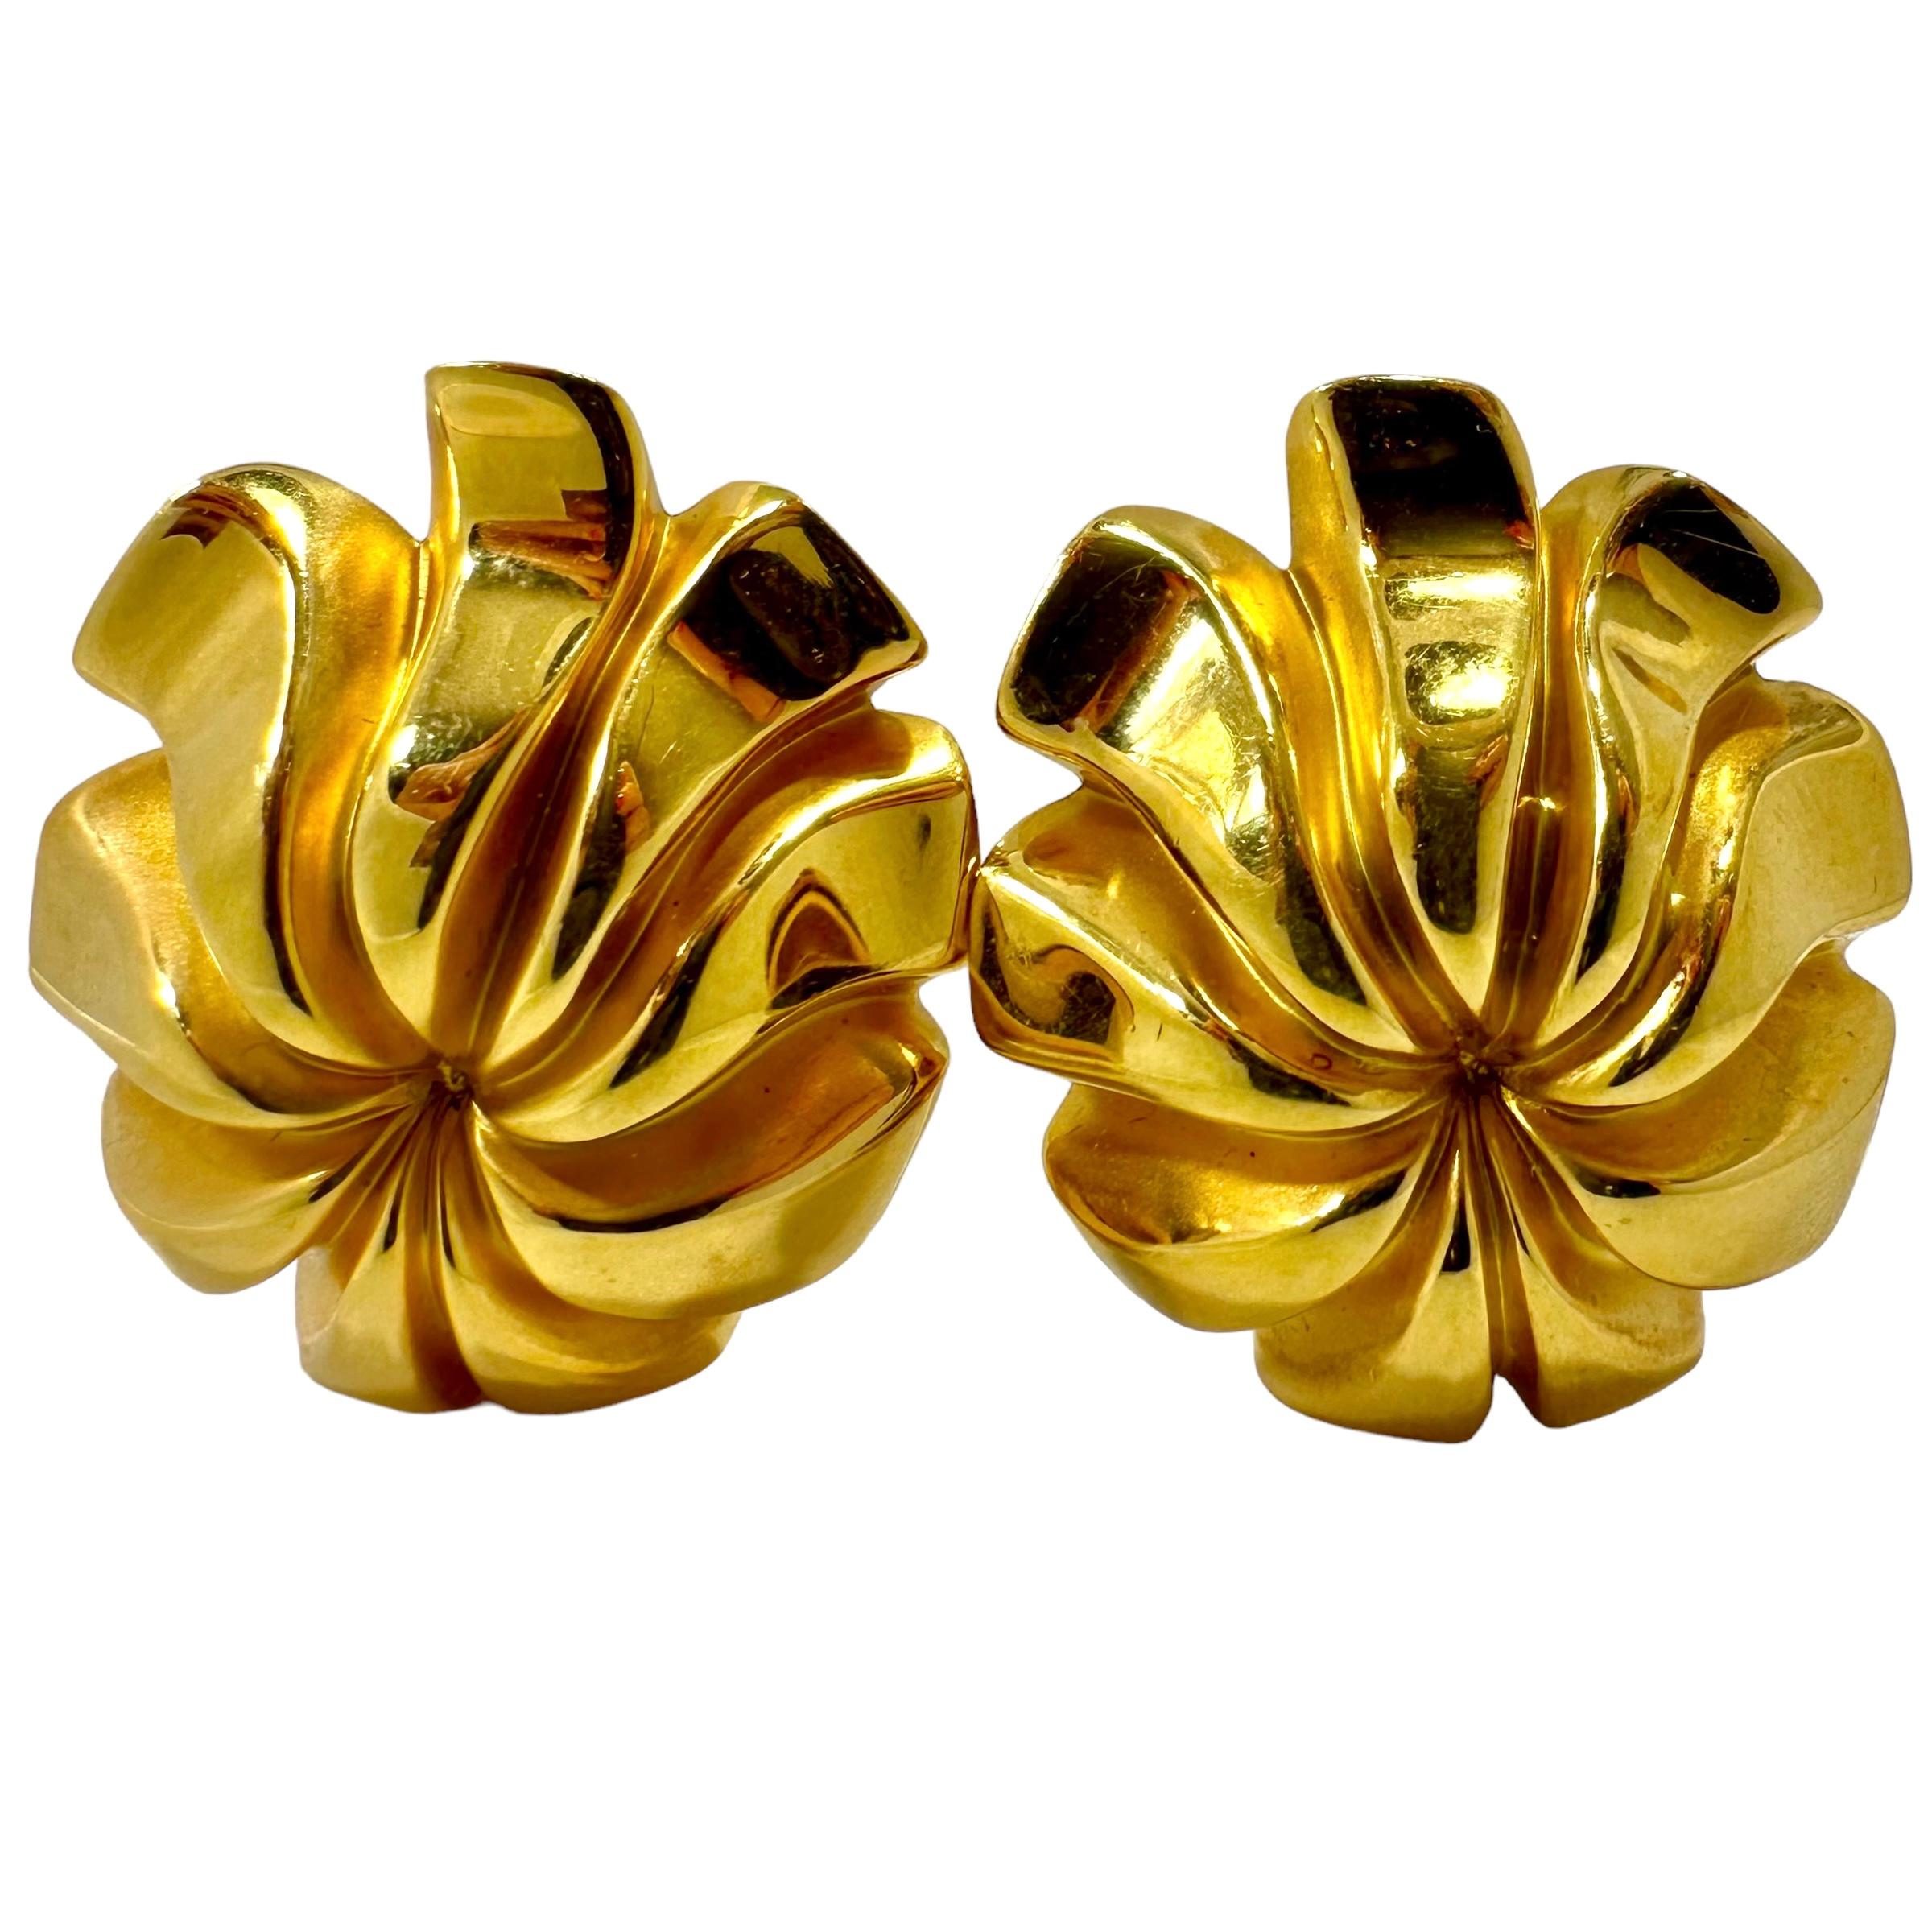 Cette paire exceptionnelle de boucles d'oreilles Tiffany & Co. en or jaune 18 carats incarne le style et la qualité Tiffany avec une touche de modernisme. Chacune mesure 1,5/16 pouce sur 1,1/16 pouce et s'élève à 1/2 pouce au-dessus de l'oreille, au